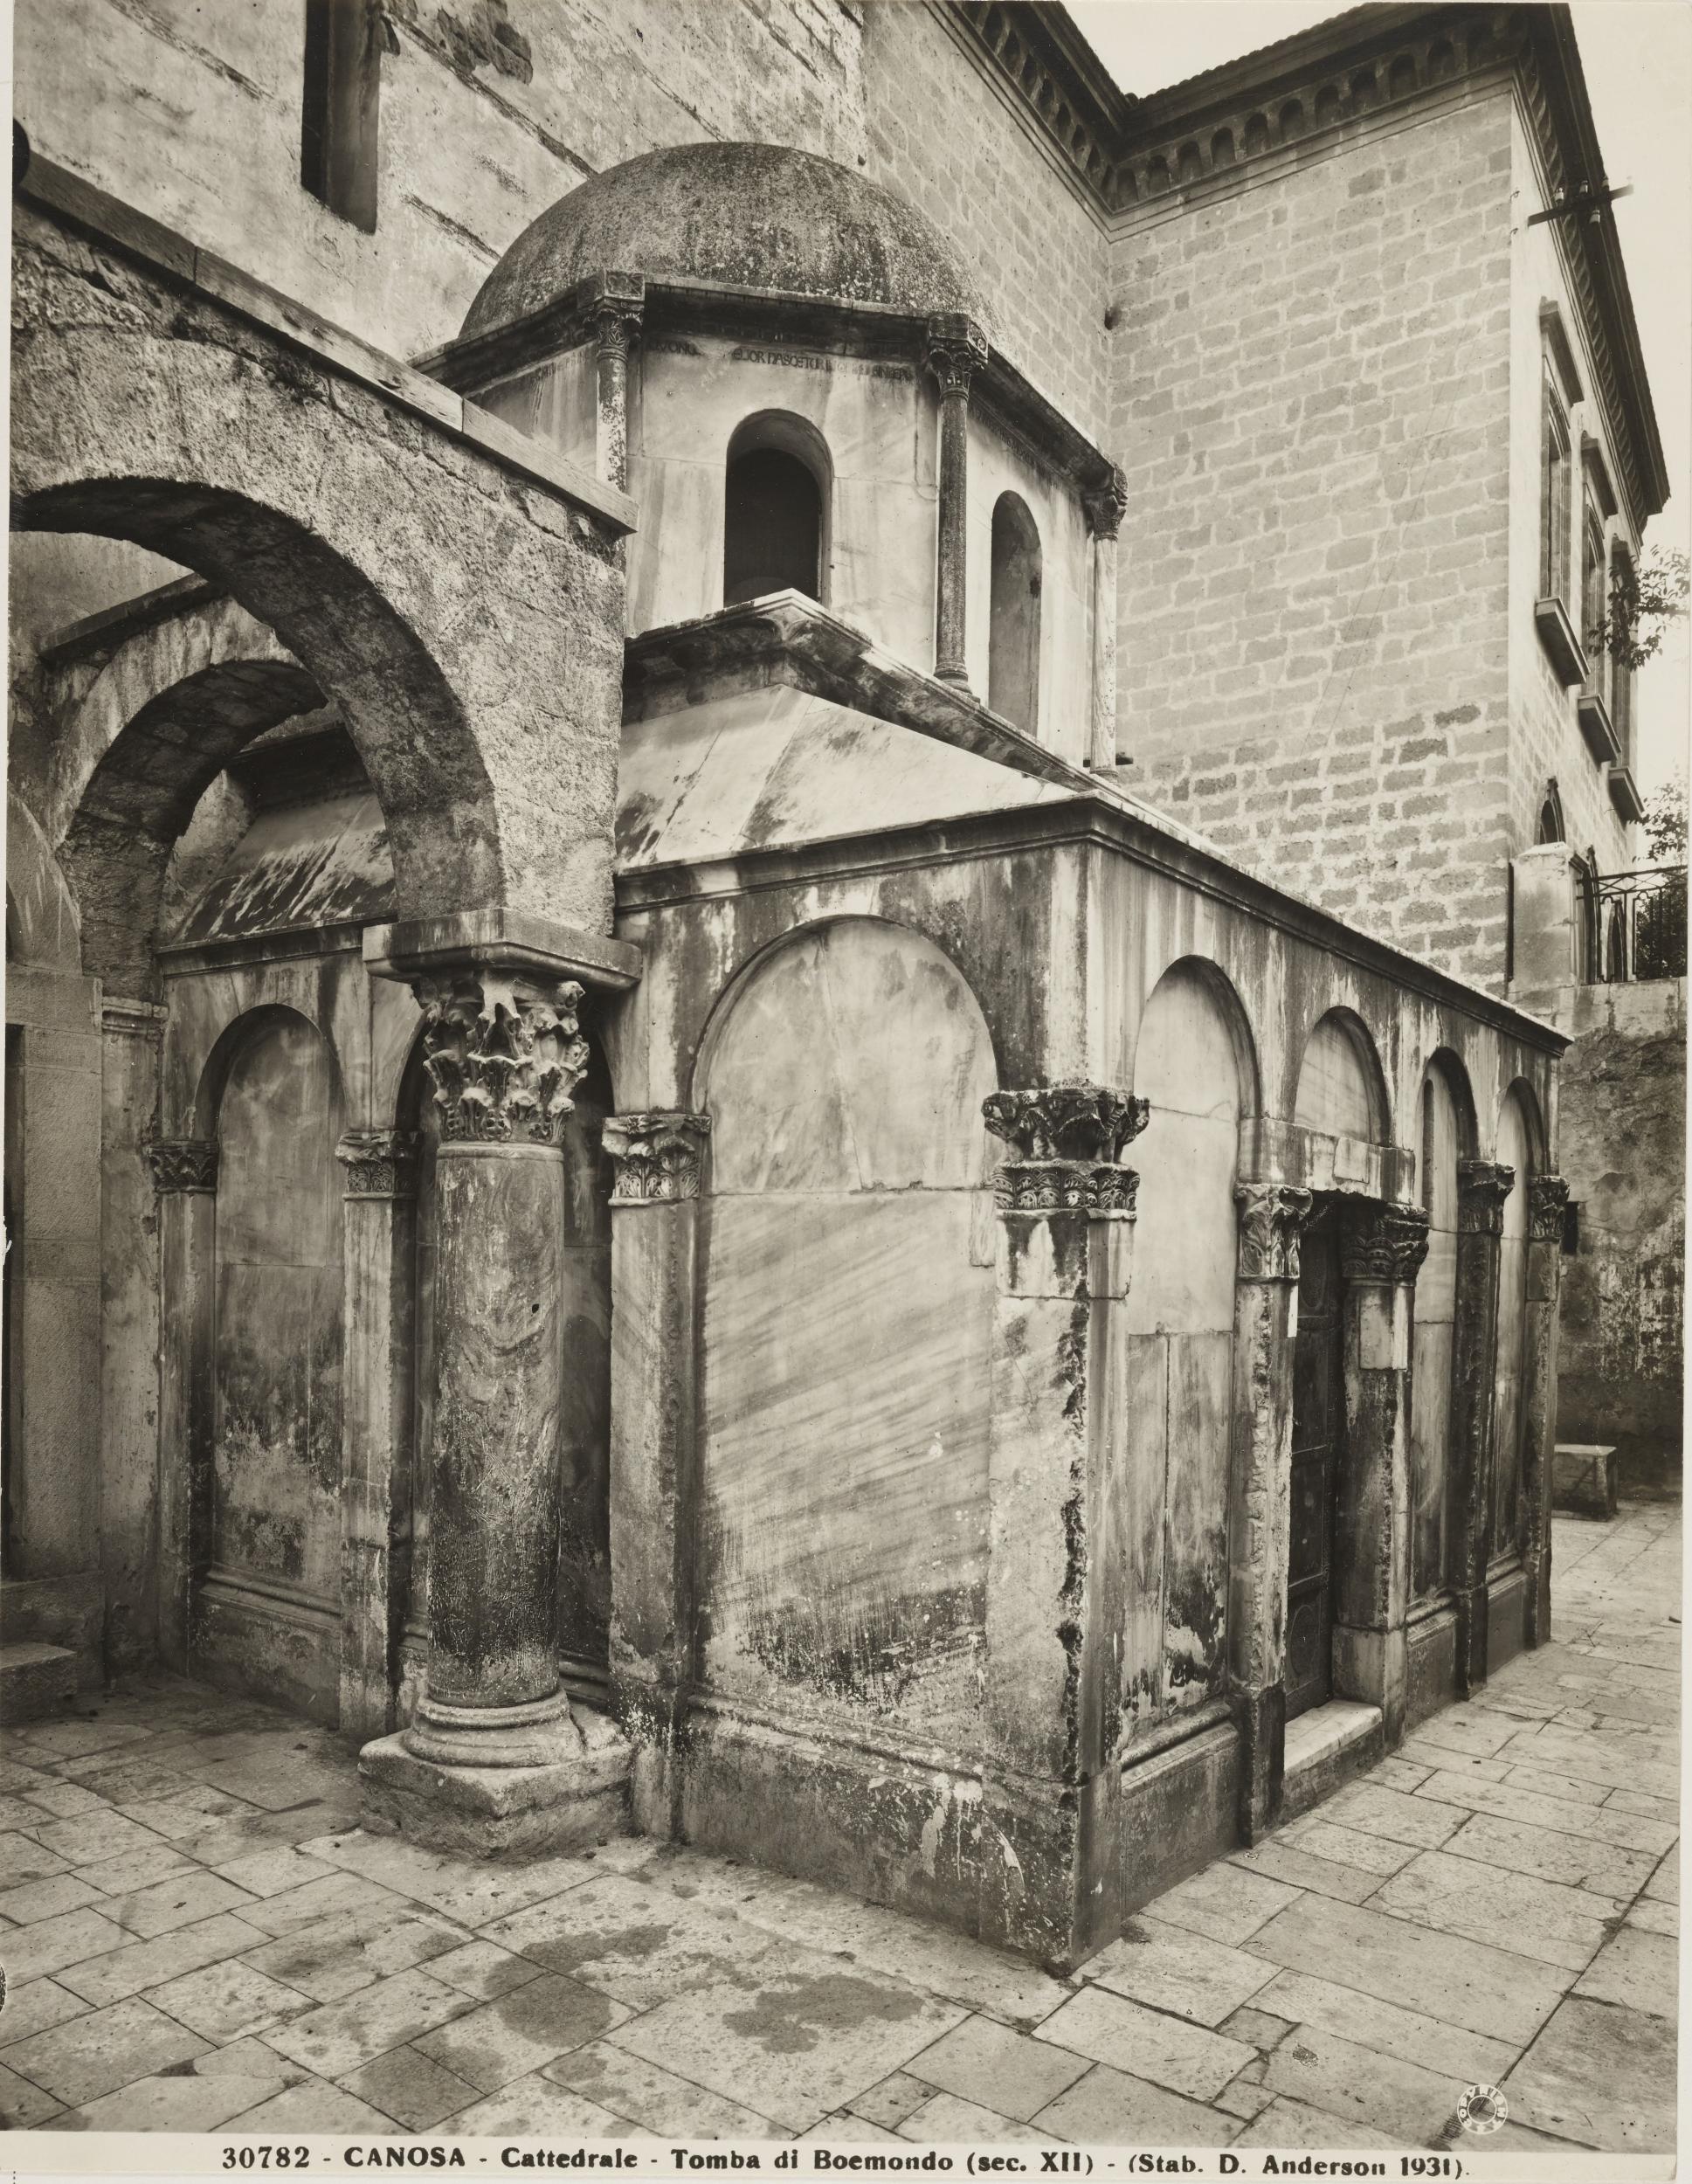 Domenico Anderson, Canosa di Puglia - Cattedrale San Sabino, esterno, tomba di Boemondo, dopo il restauro, 1926-1950, gelatina ai sali d'argento/carta, 25,5x20 cm, MPI309698